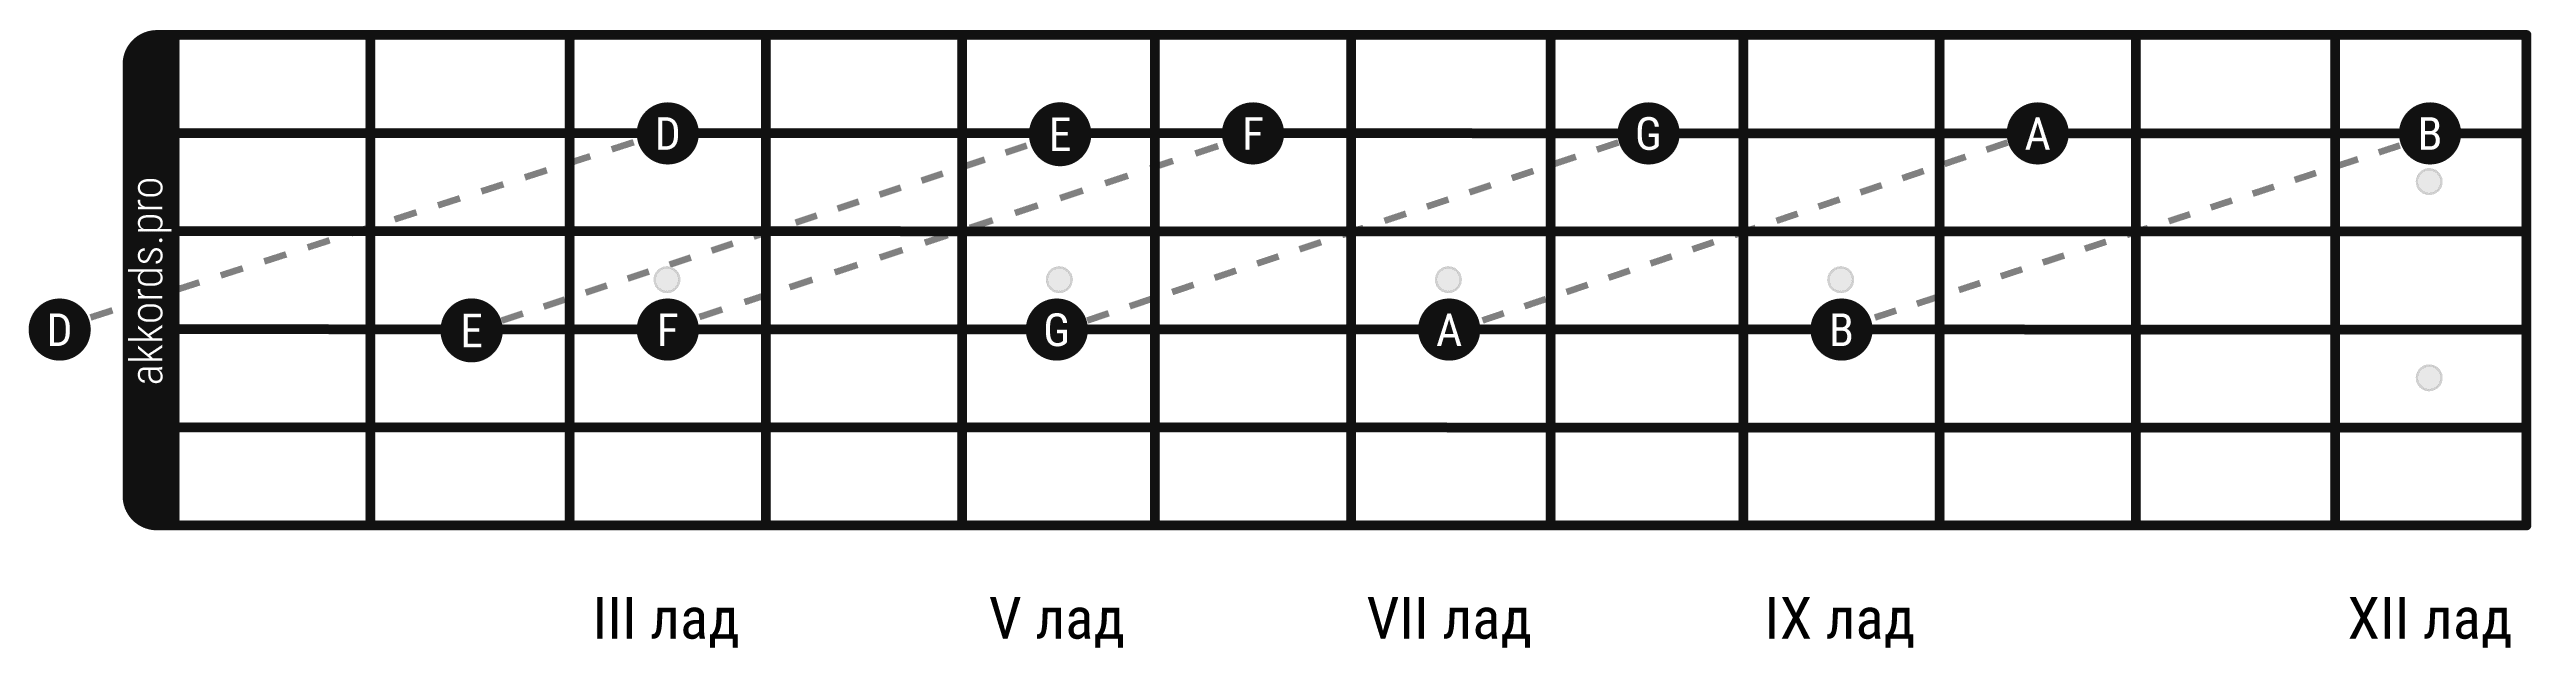 Ноты на грифе гитары: расположение нот на 2 струне